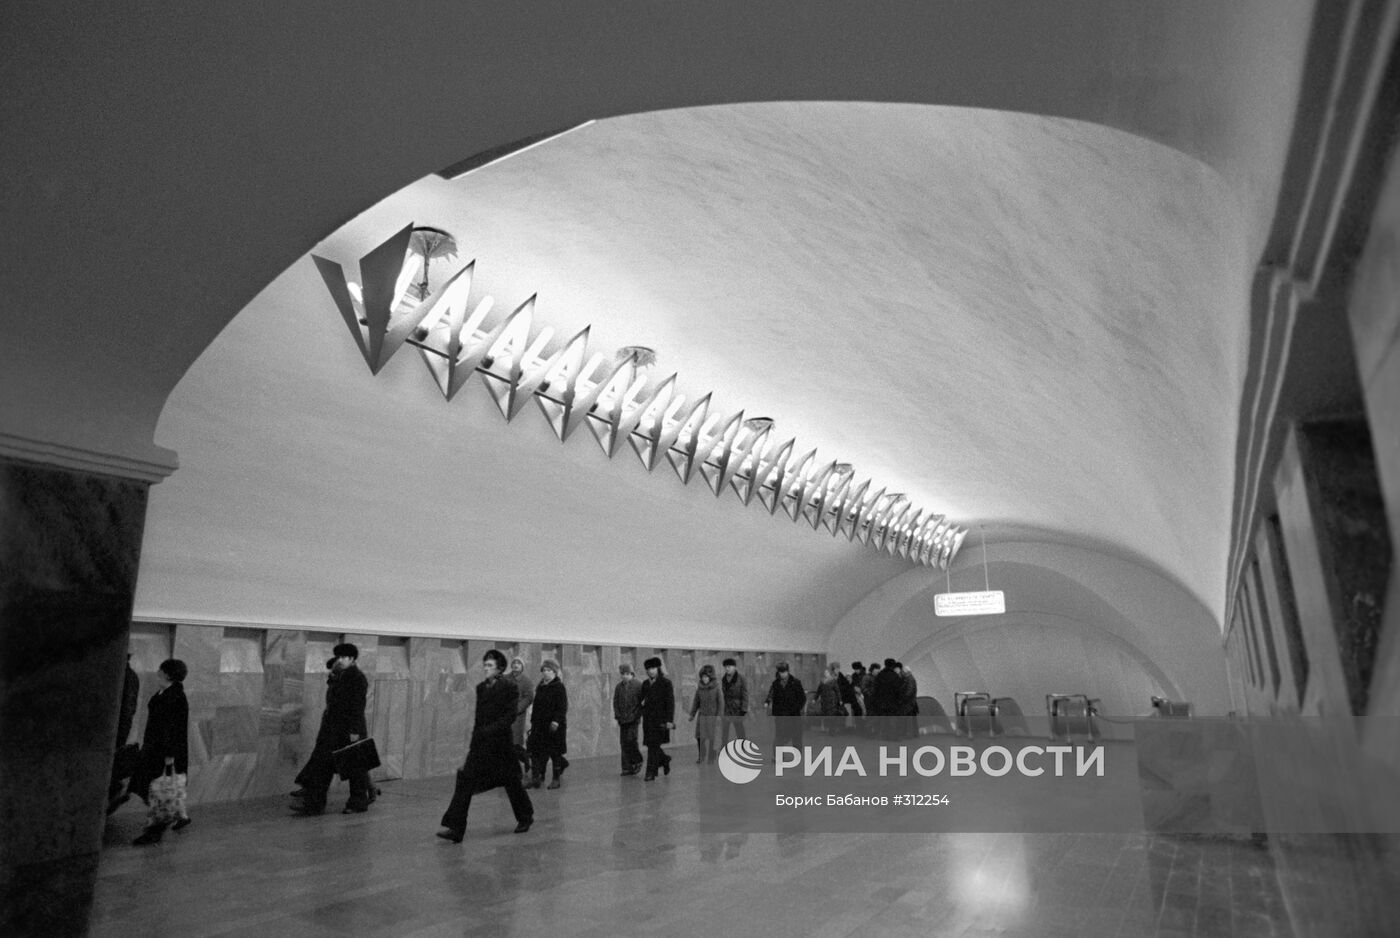 В московском метро